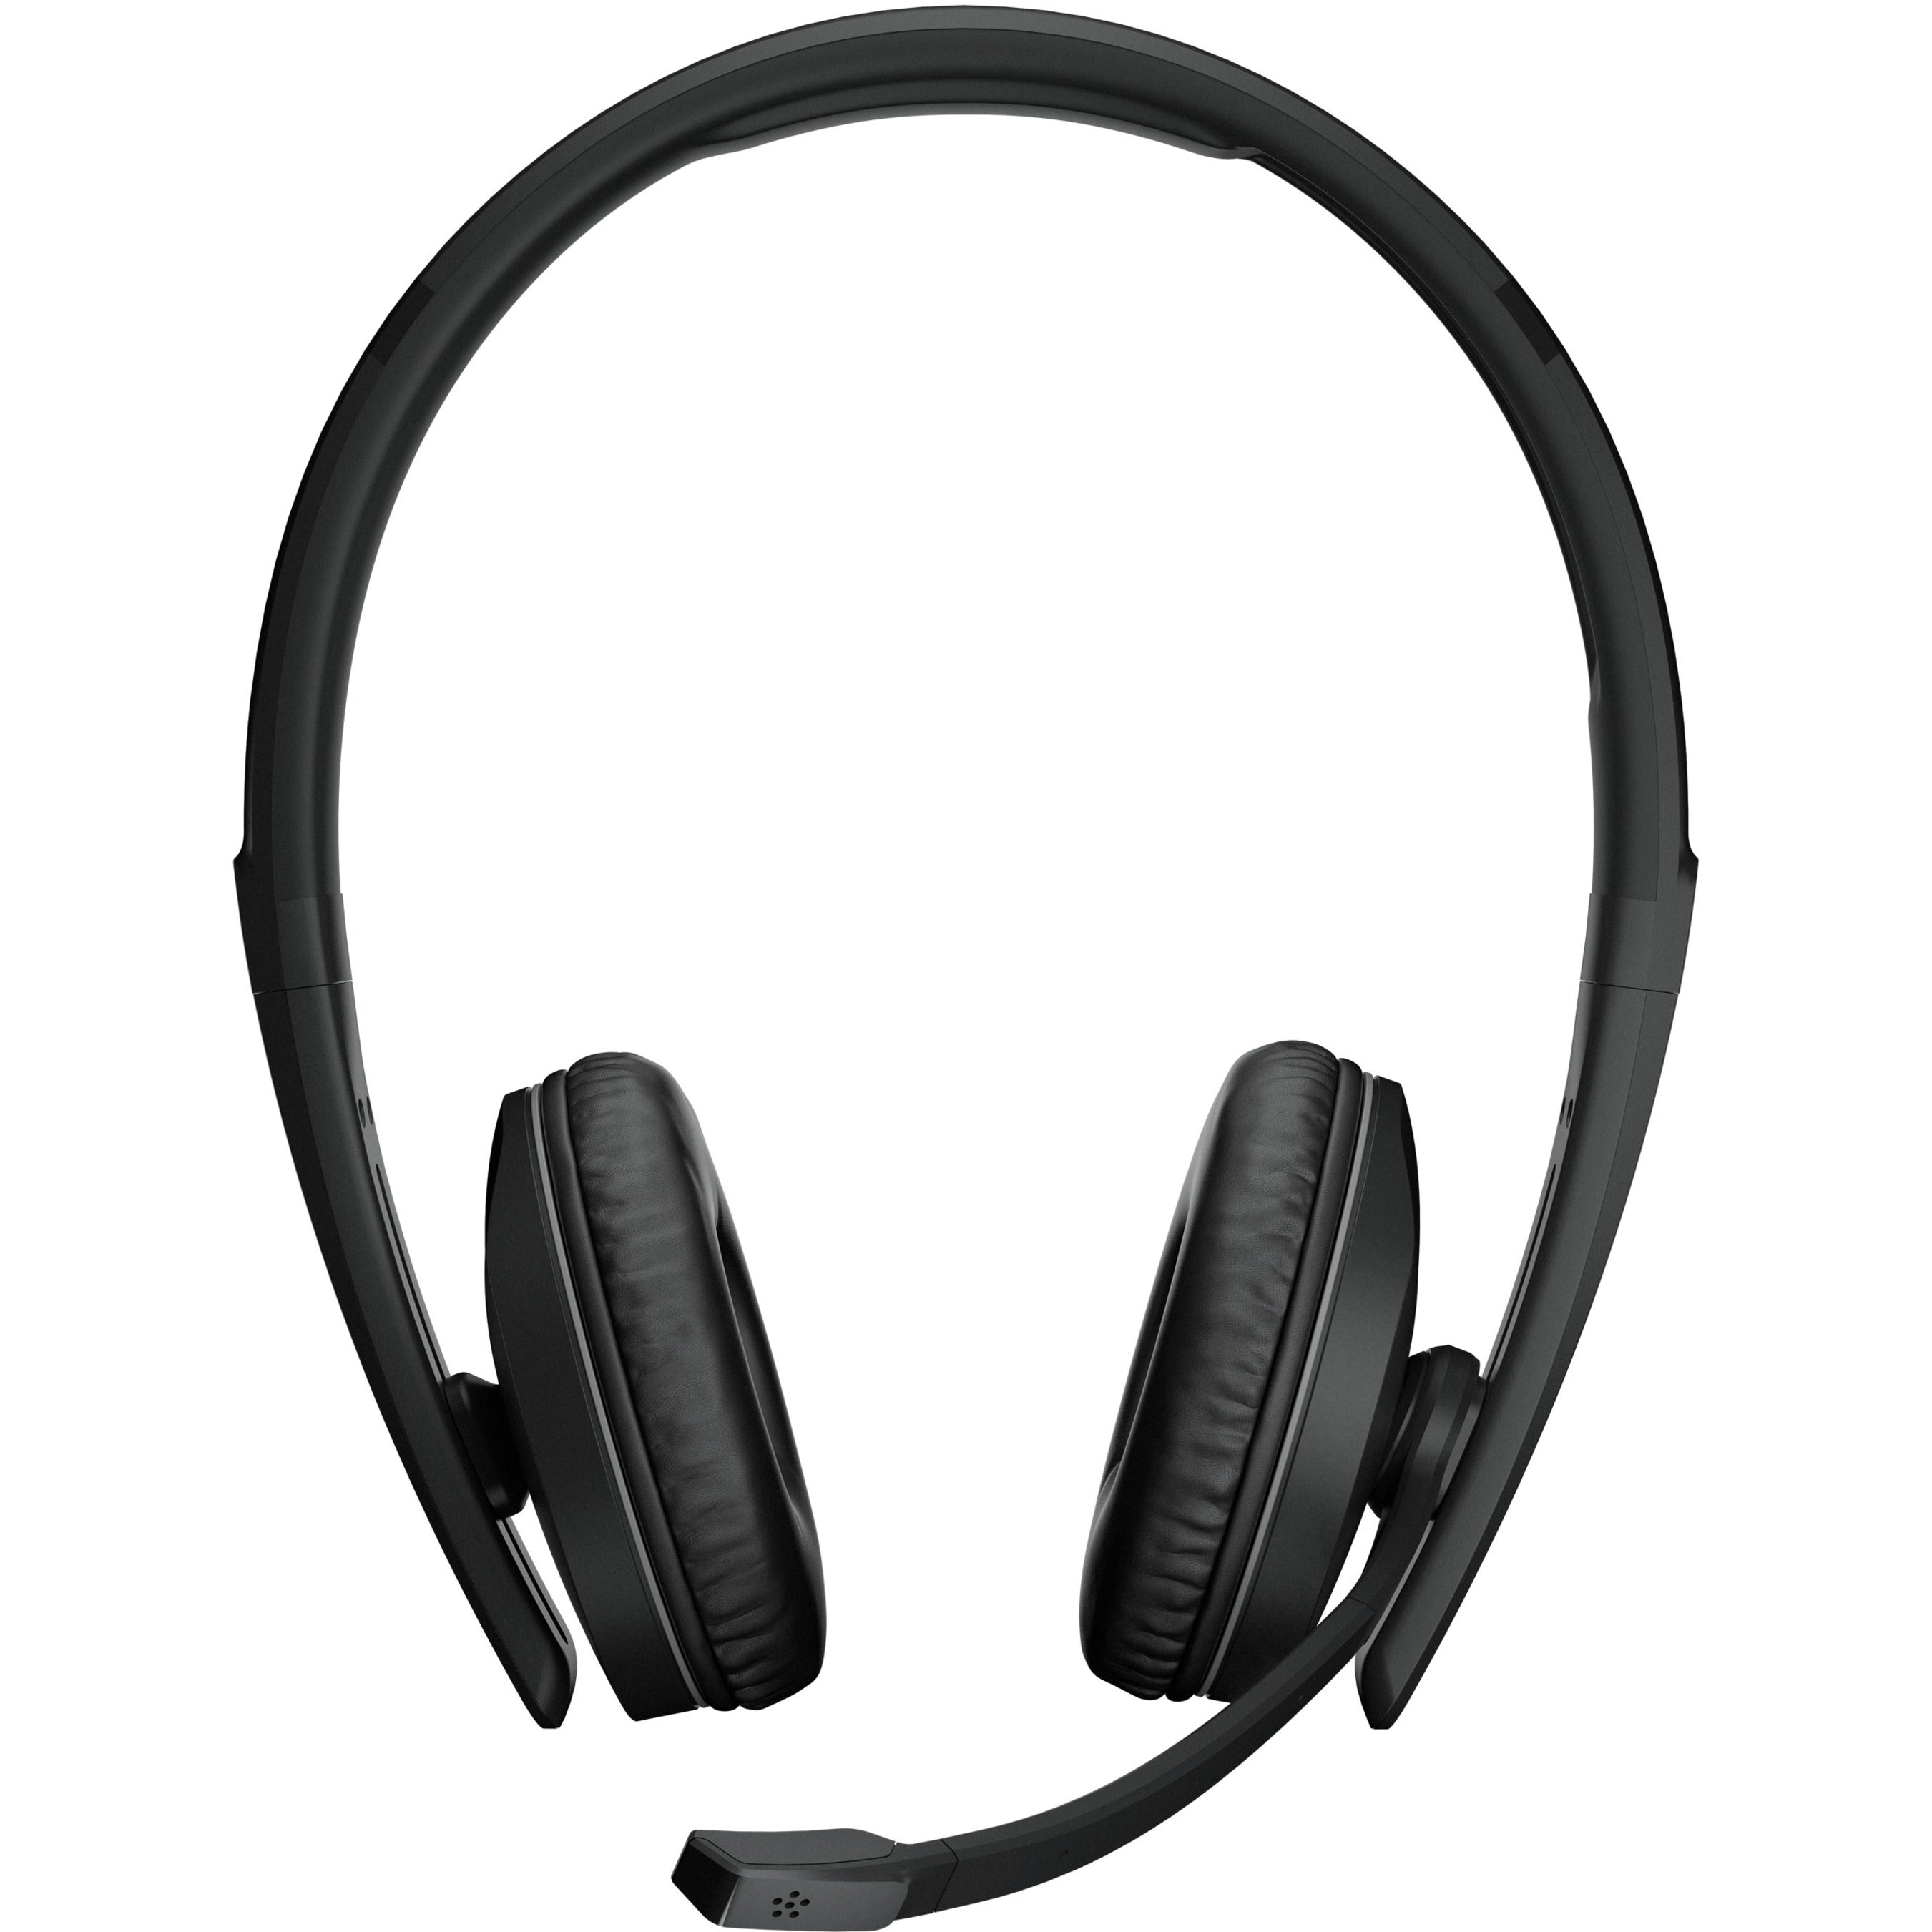 EPOS | SENNHEISER 1000897 ADAPT 261 On-ear Bluetooth Headset, USB-C Dongle, 2-Year Warranty